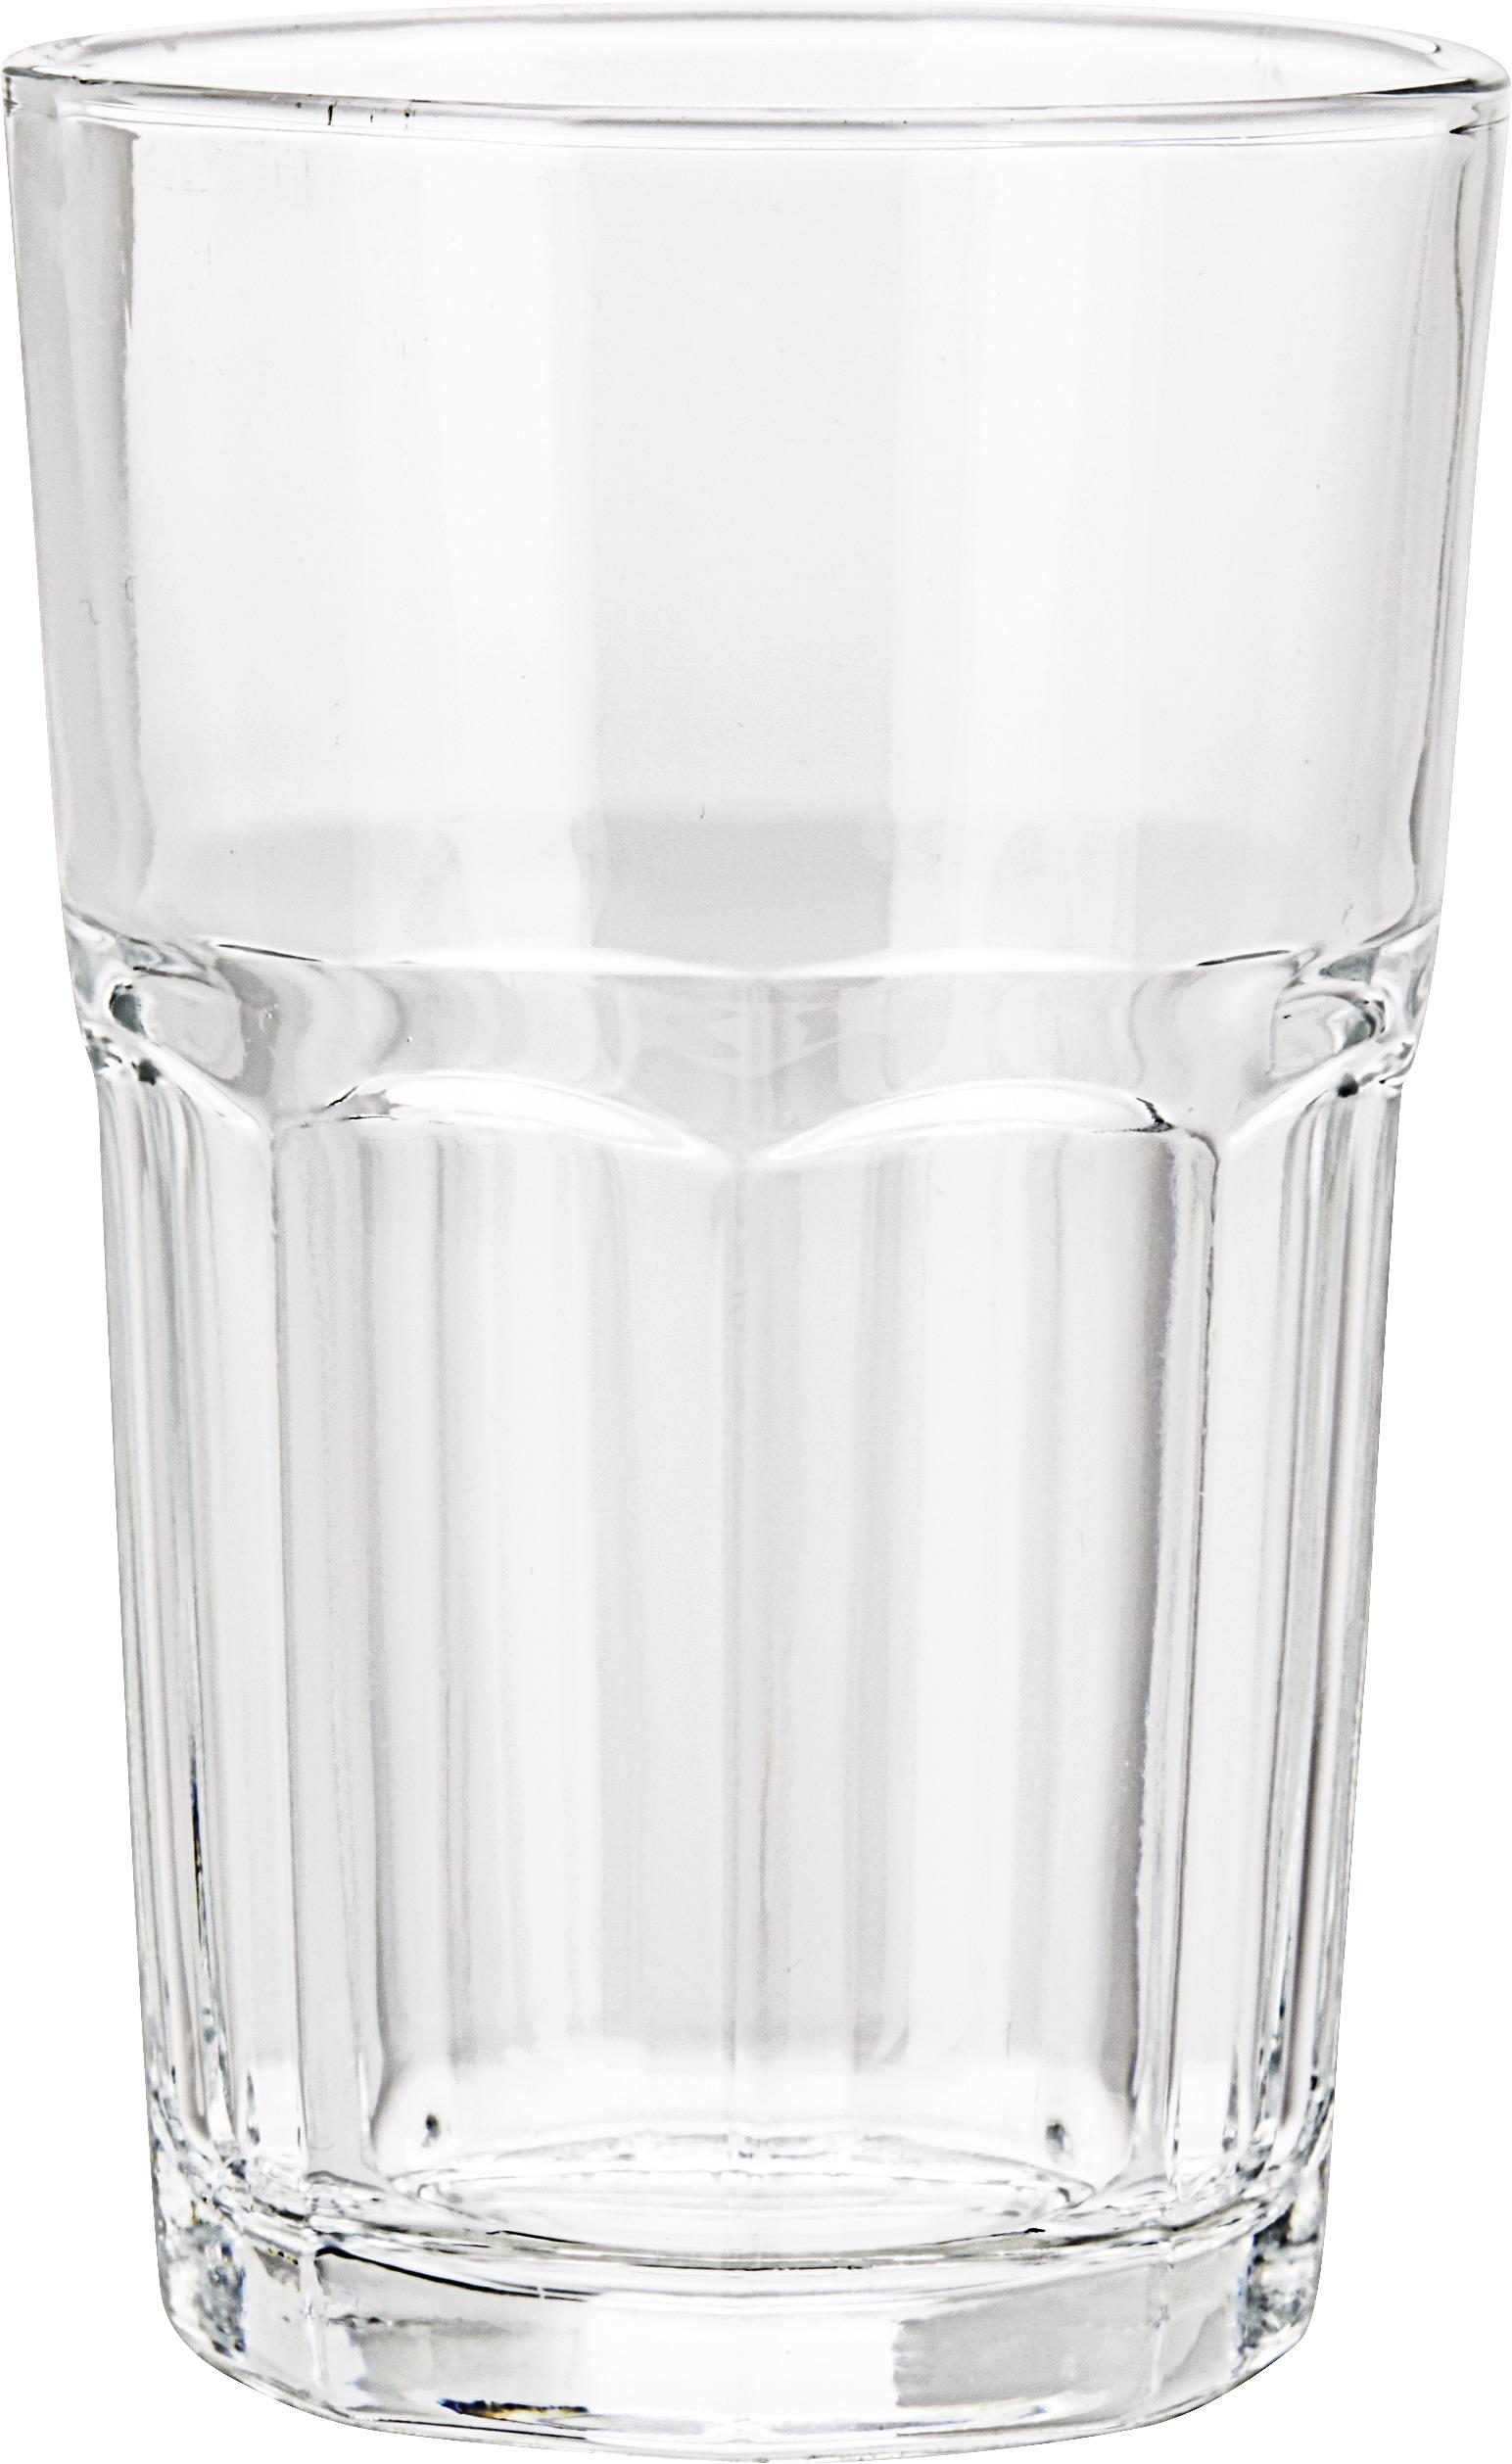 Longdrinkglas Eva, 290ml - Klar, Glas (7,8/11,9cm) - Based